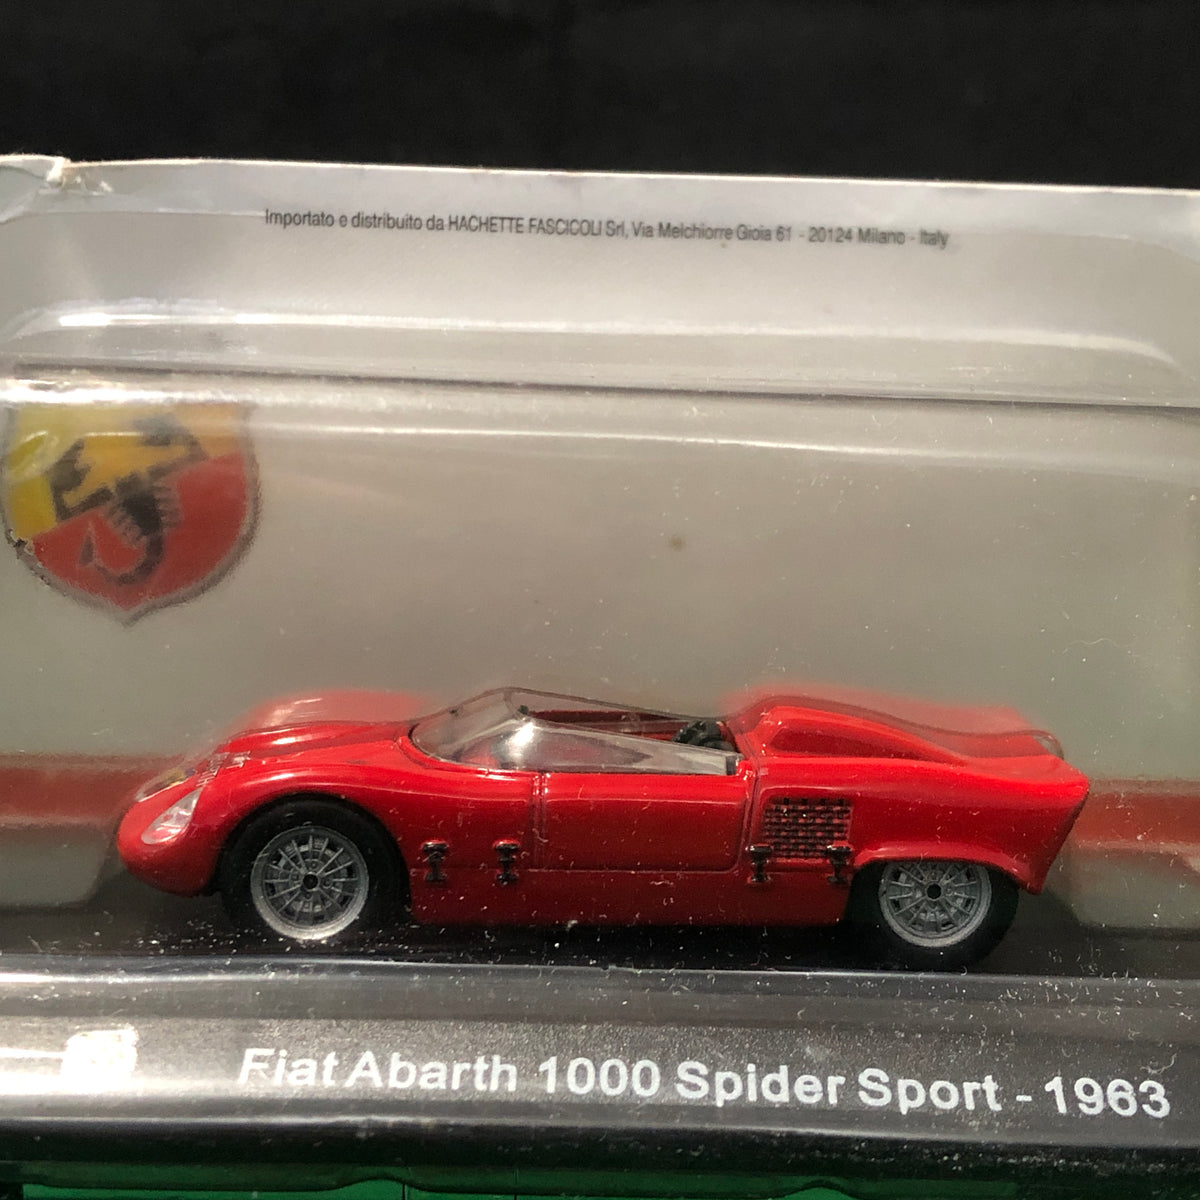 Abarth Fiat 1000 Spider Sport 1963 by Hechette 1:43 (Abarth)